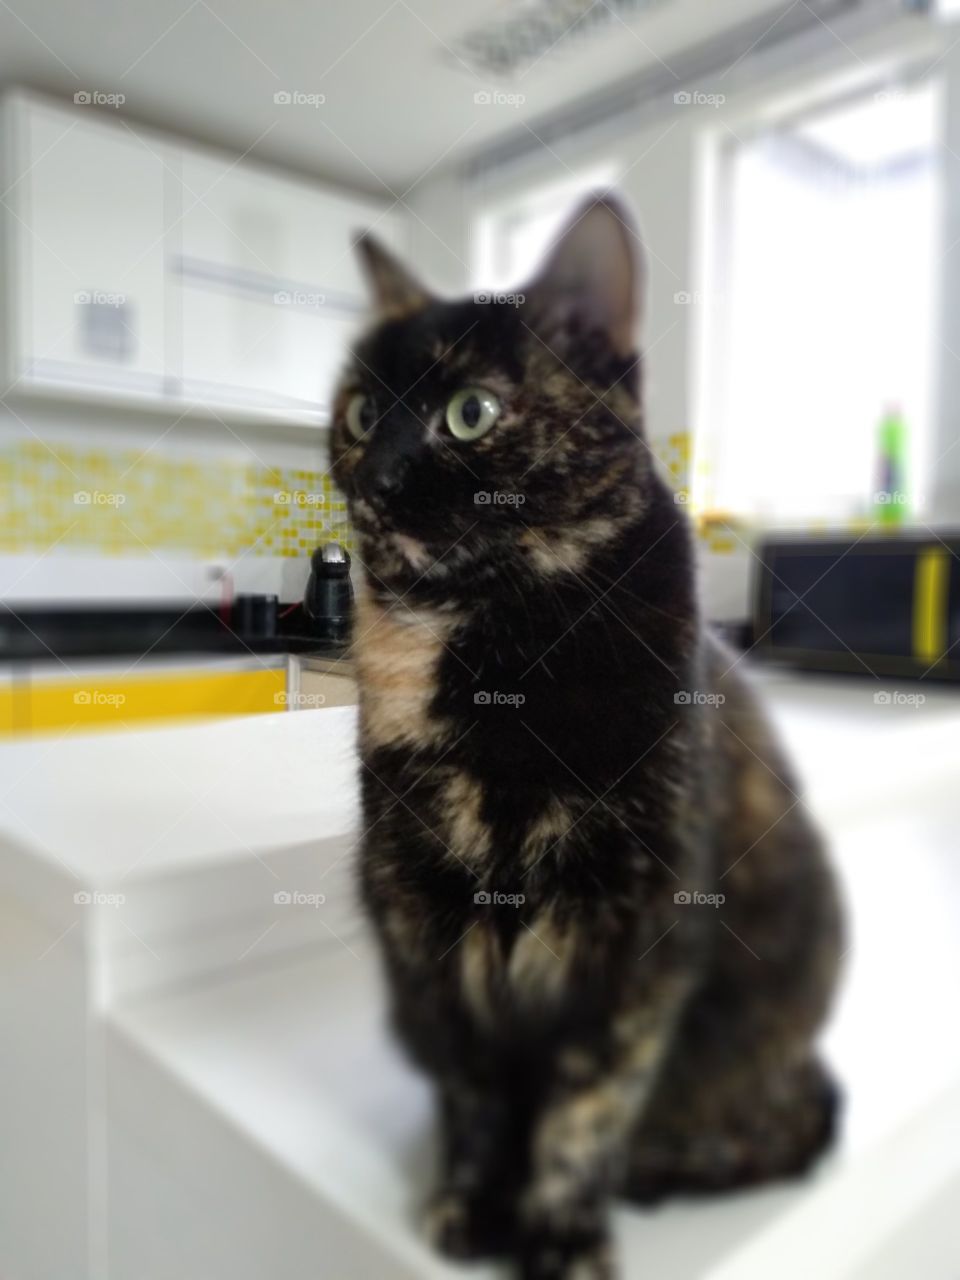 cute cat in the kitchen